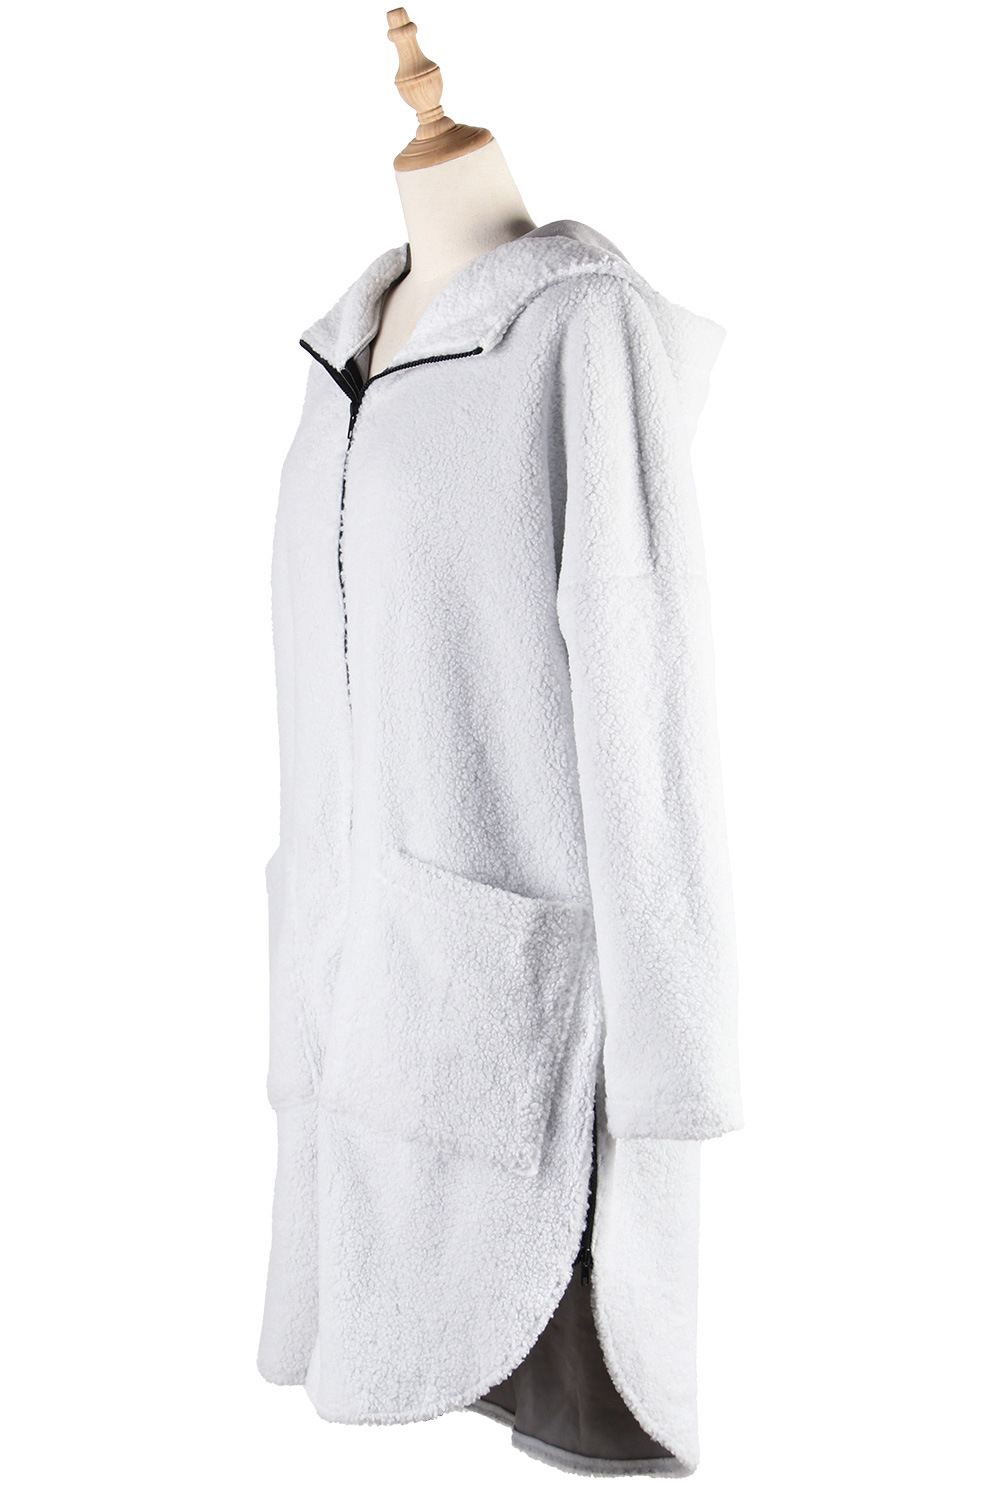 Autumn and winter lambs wool zip woolen coat for women